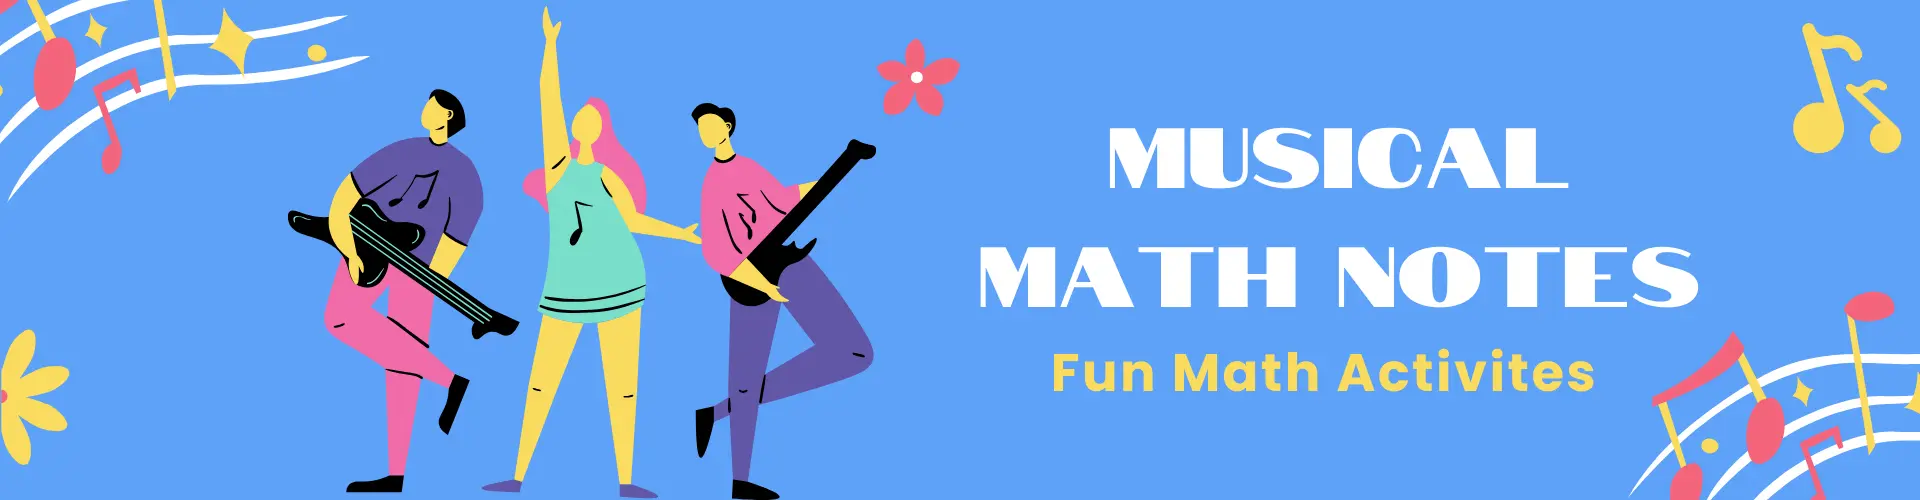 Musical Math Notes Fun Math Activities